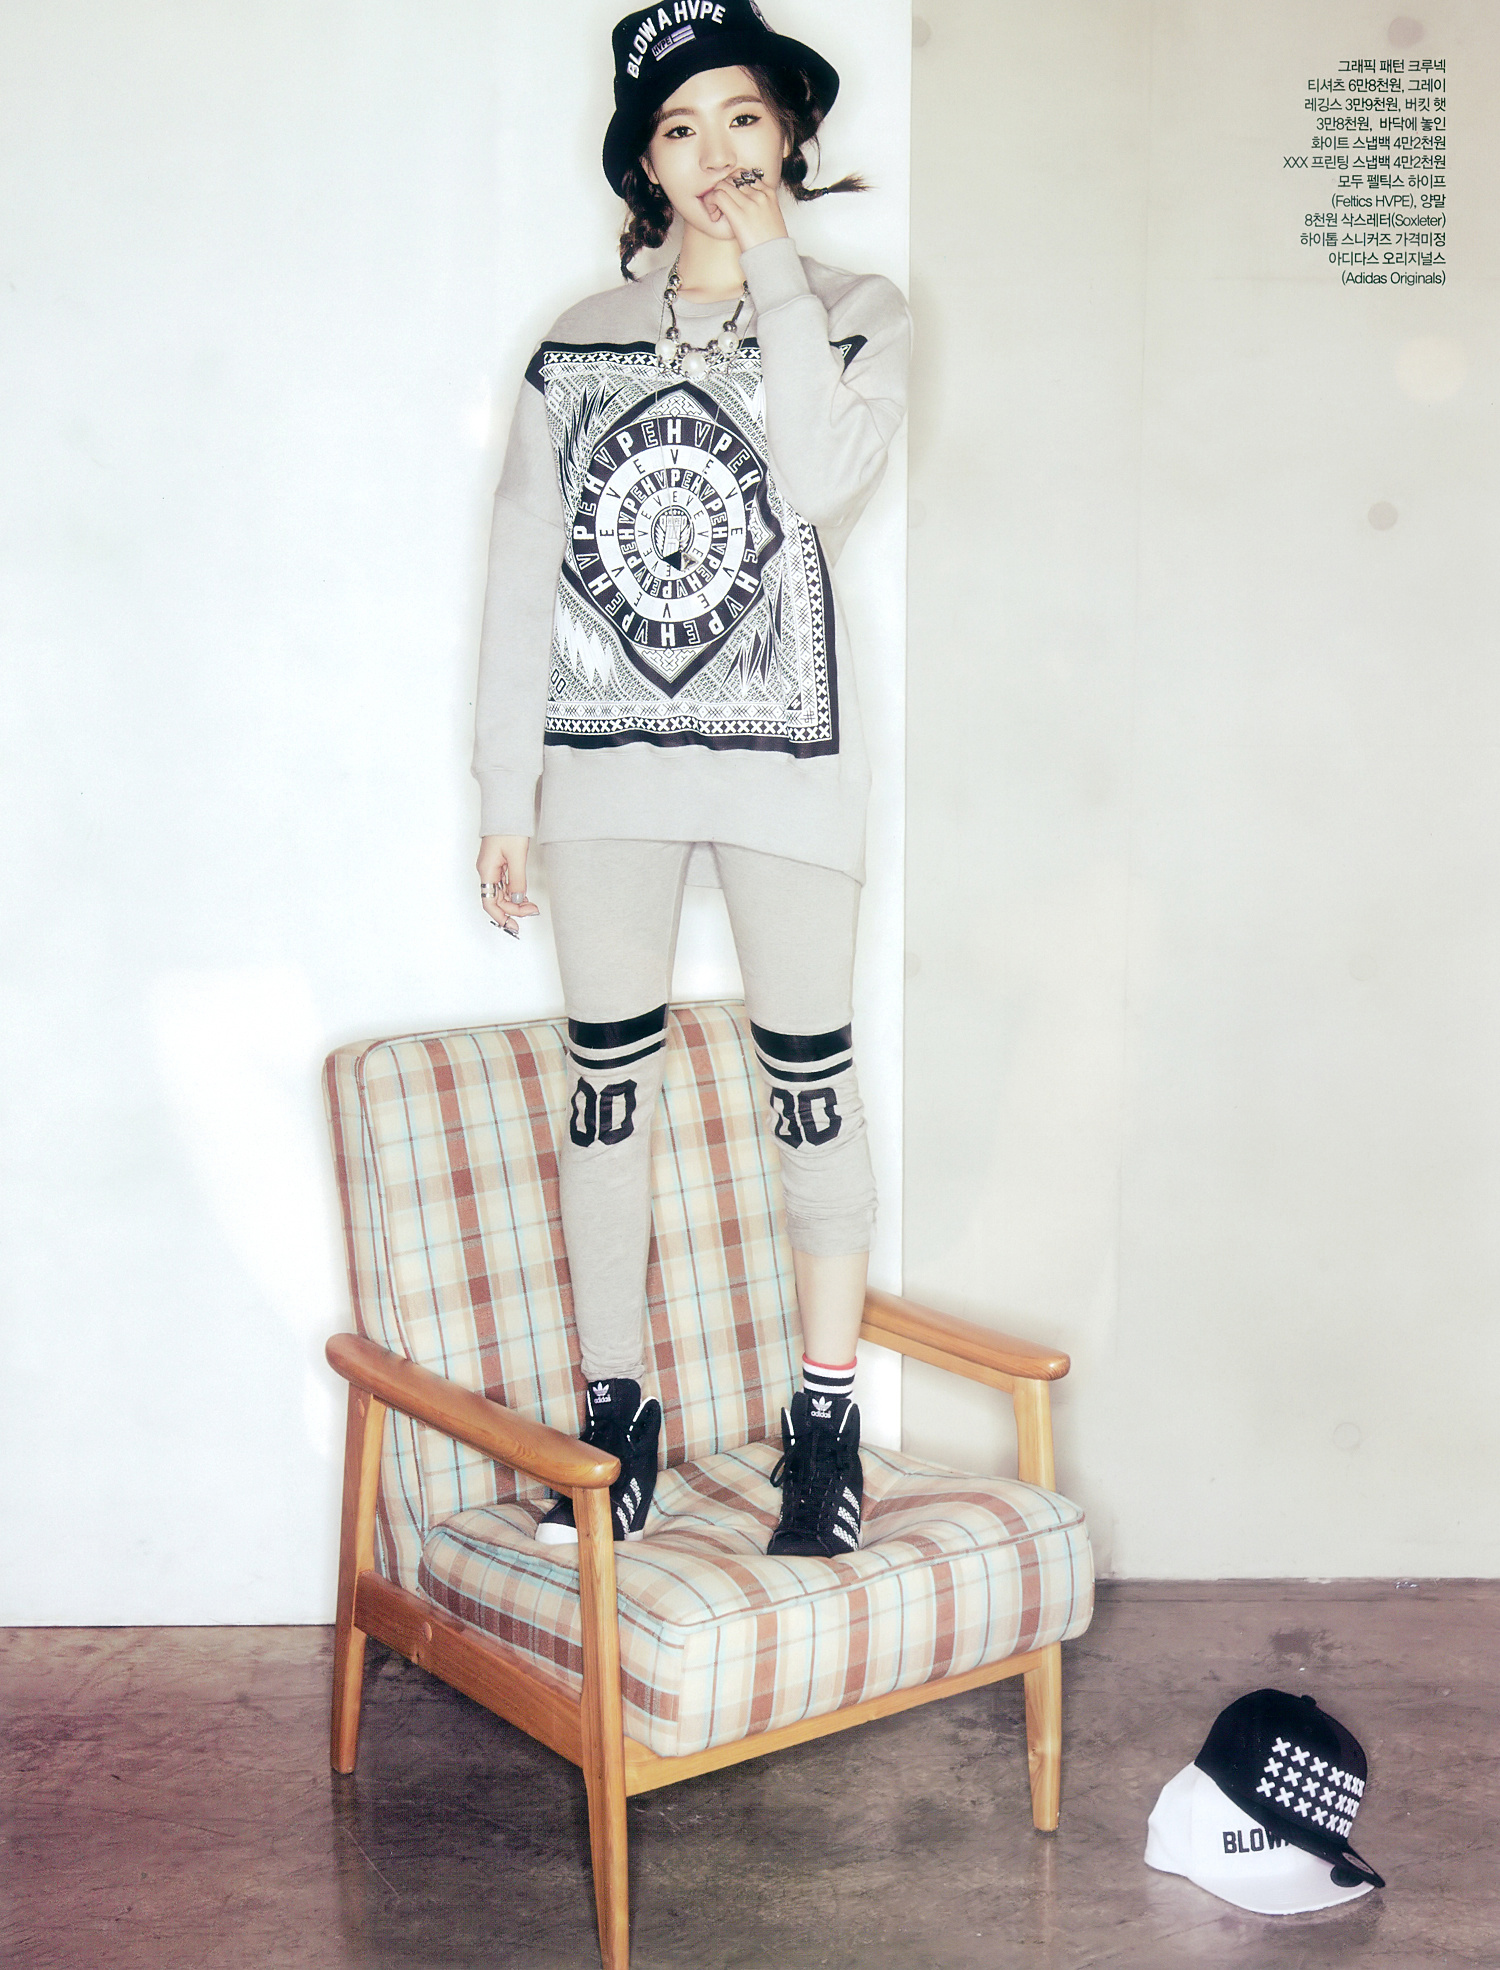 [PIC][19-11-2014]Sunny xuất hiện trên ấn phẩm tháng 12 của tạp chí "CECI" 15640595899_8ff9cf9e63_o